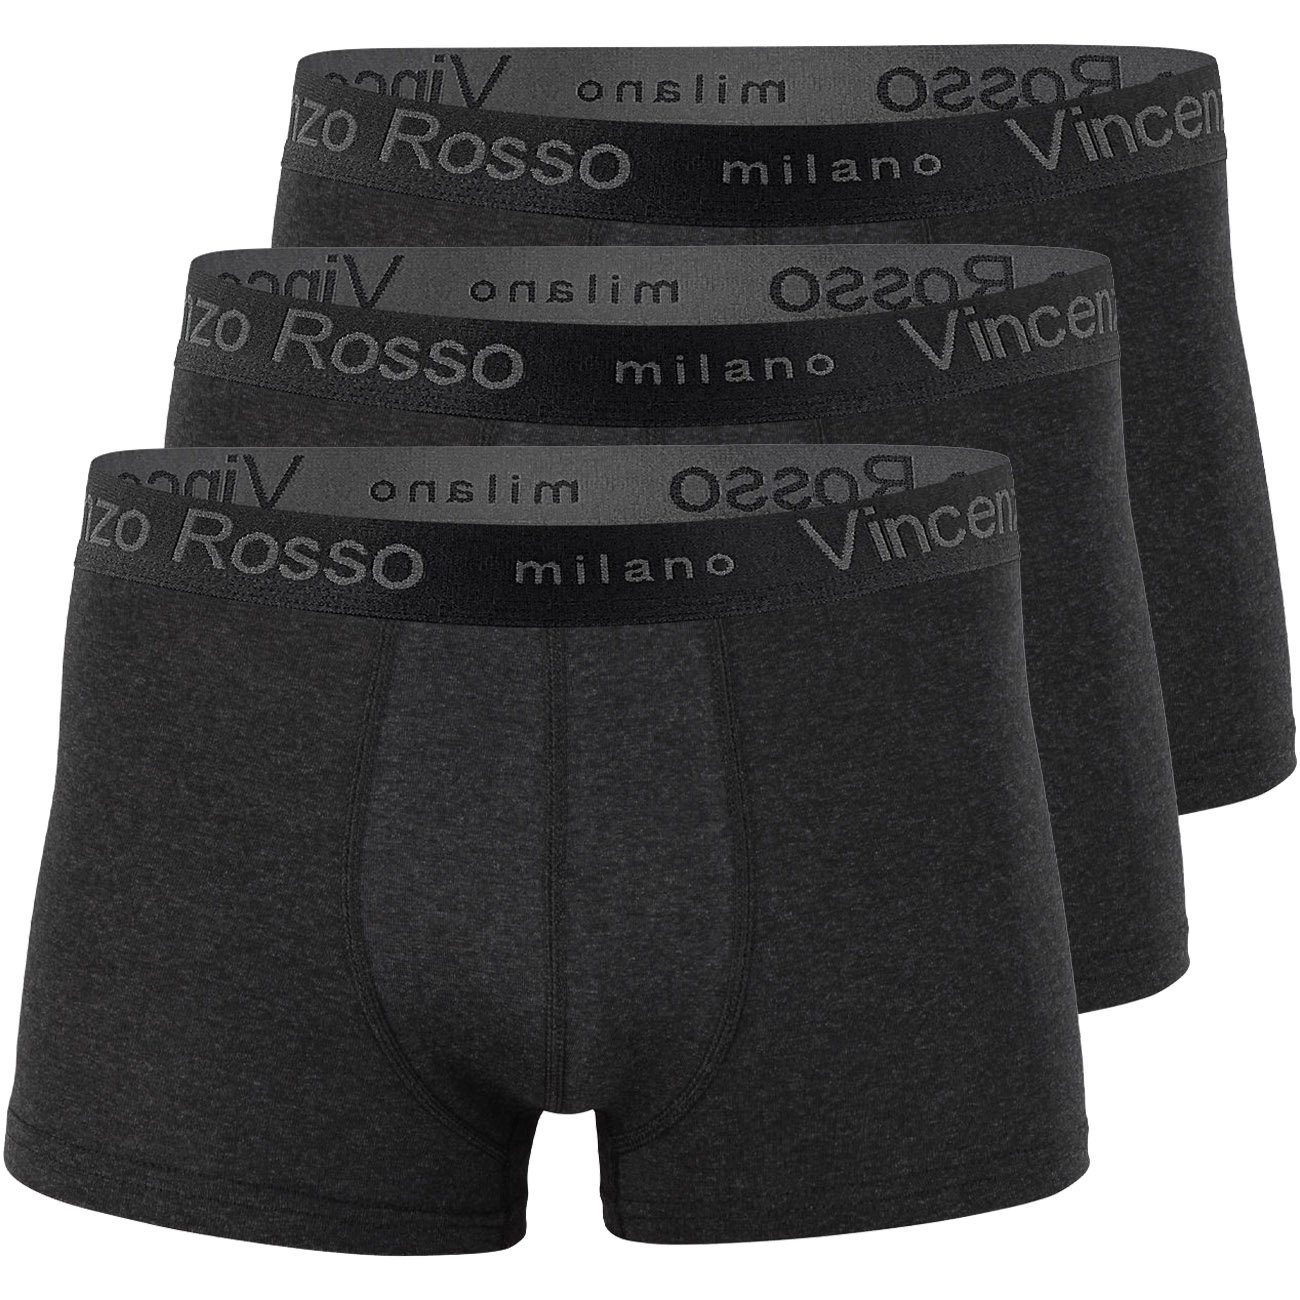 Wäsche/Bademode Boxershorts Reslad Boxershorts Reslad Boxershorts Herren (12er Pack) Unterhosen (12 Stück) Männer Unterhosen aus